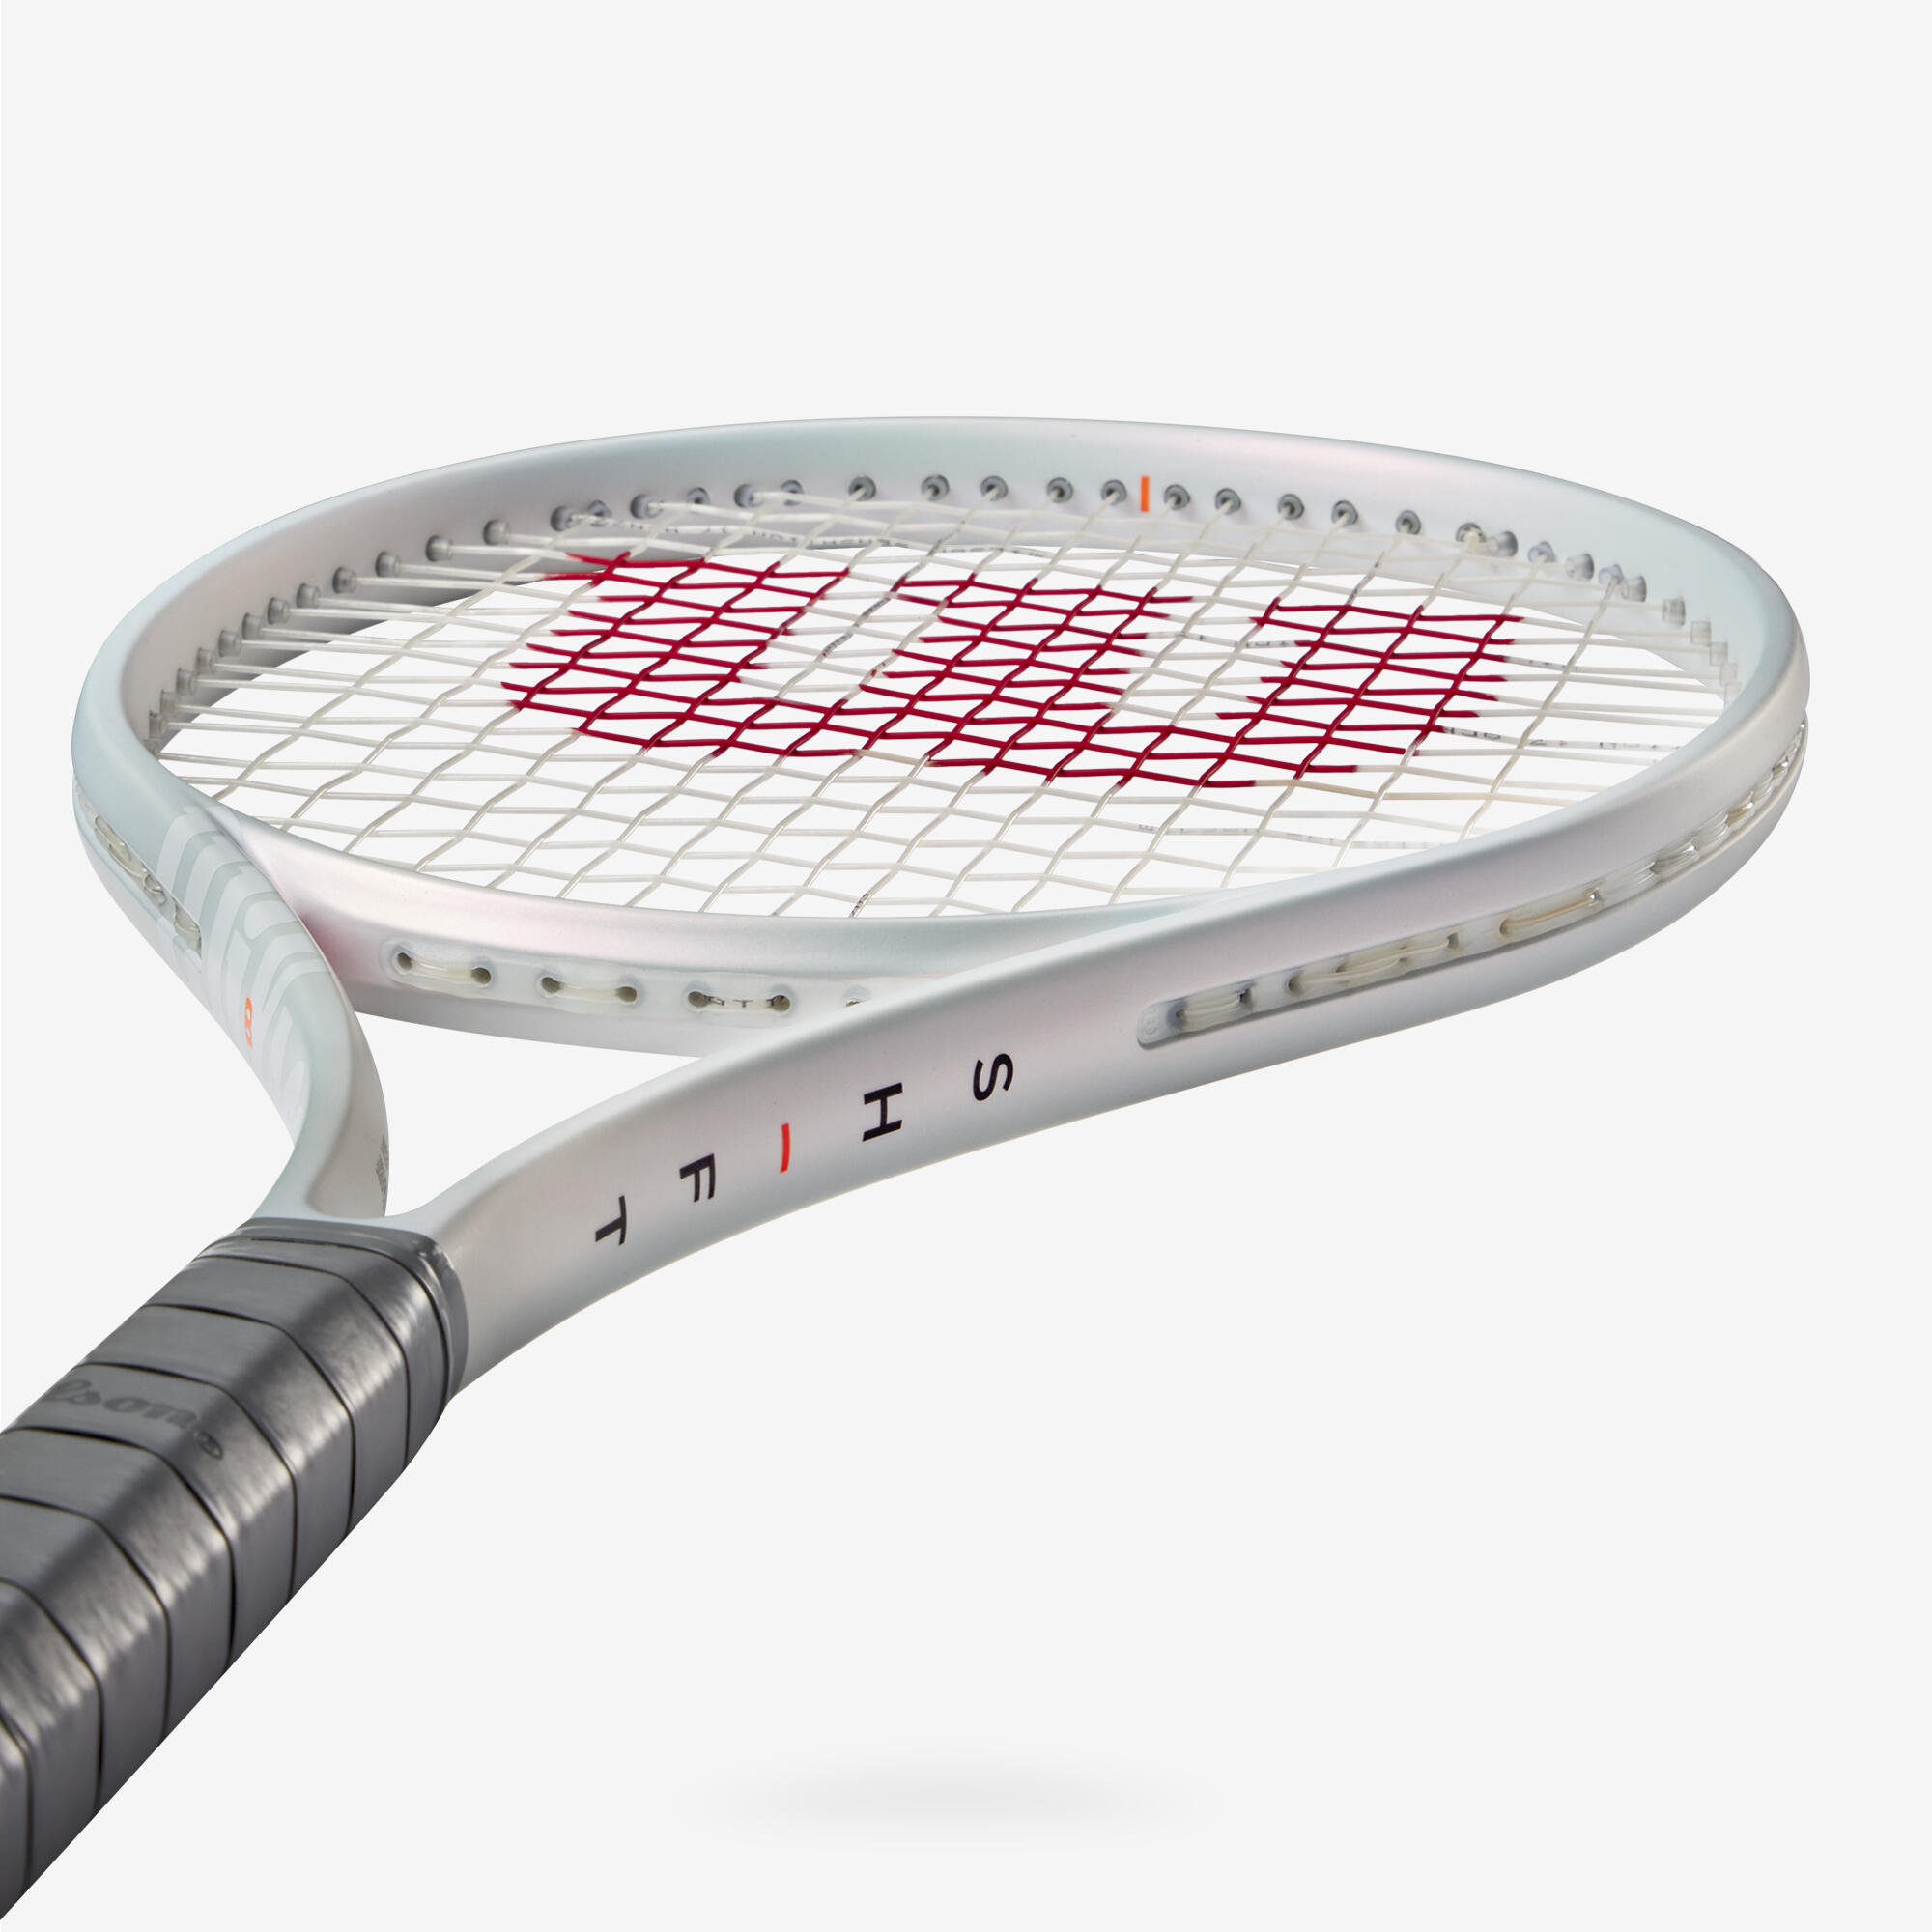 Adult Tennis Racket Shift 99 V1 300 g Unstrung 5/6